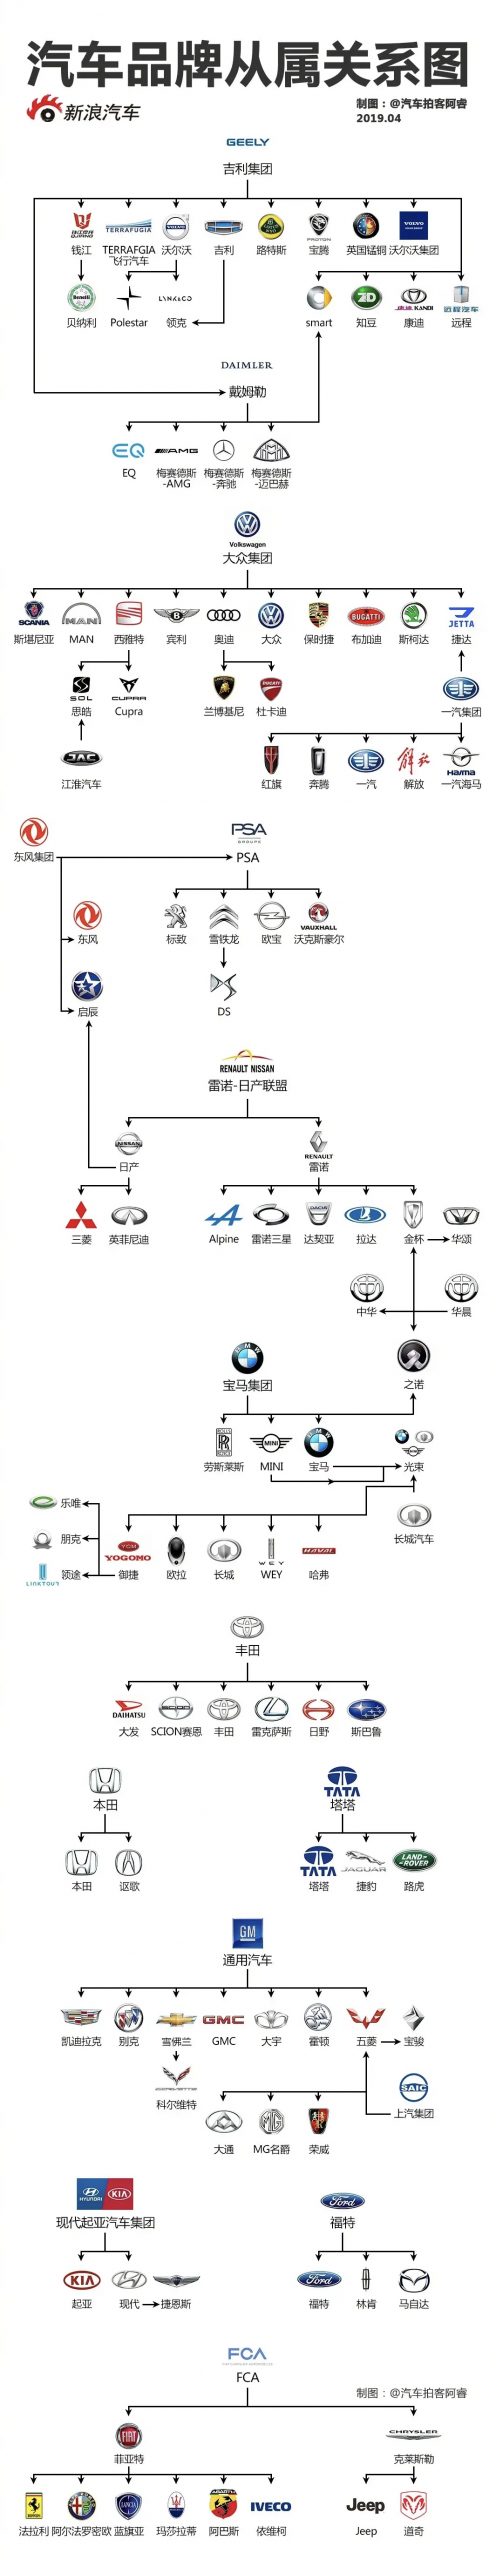 汽车品牌图